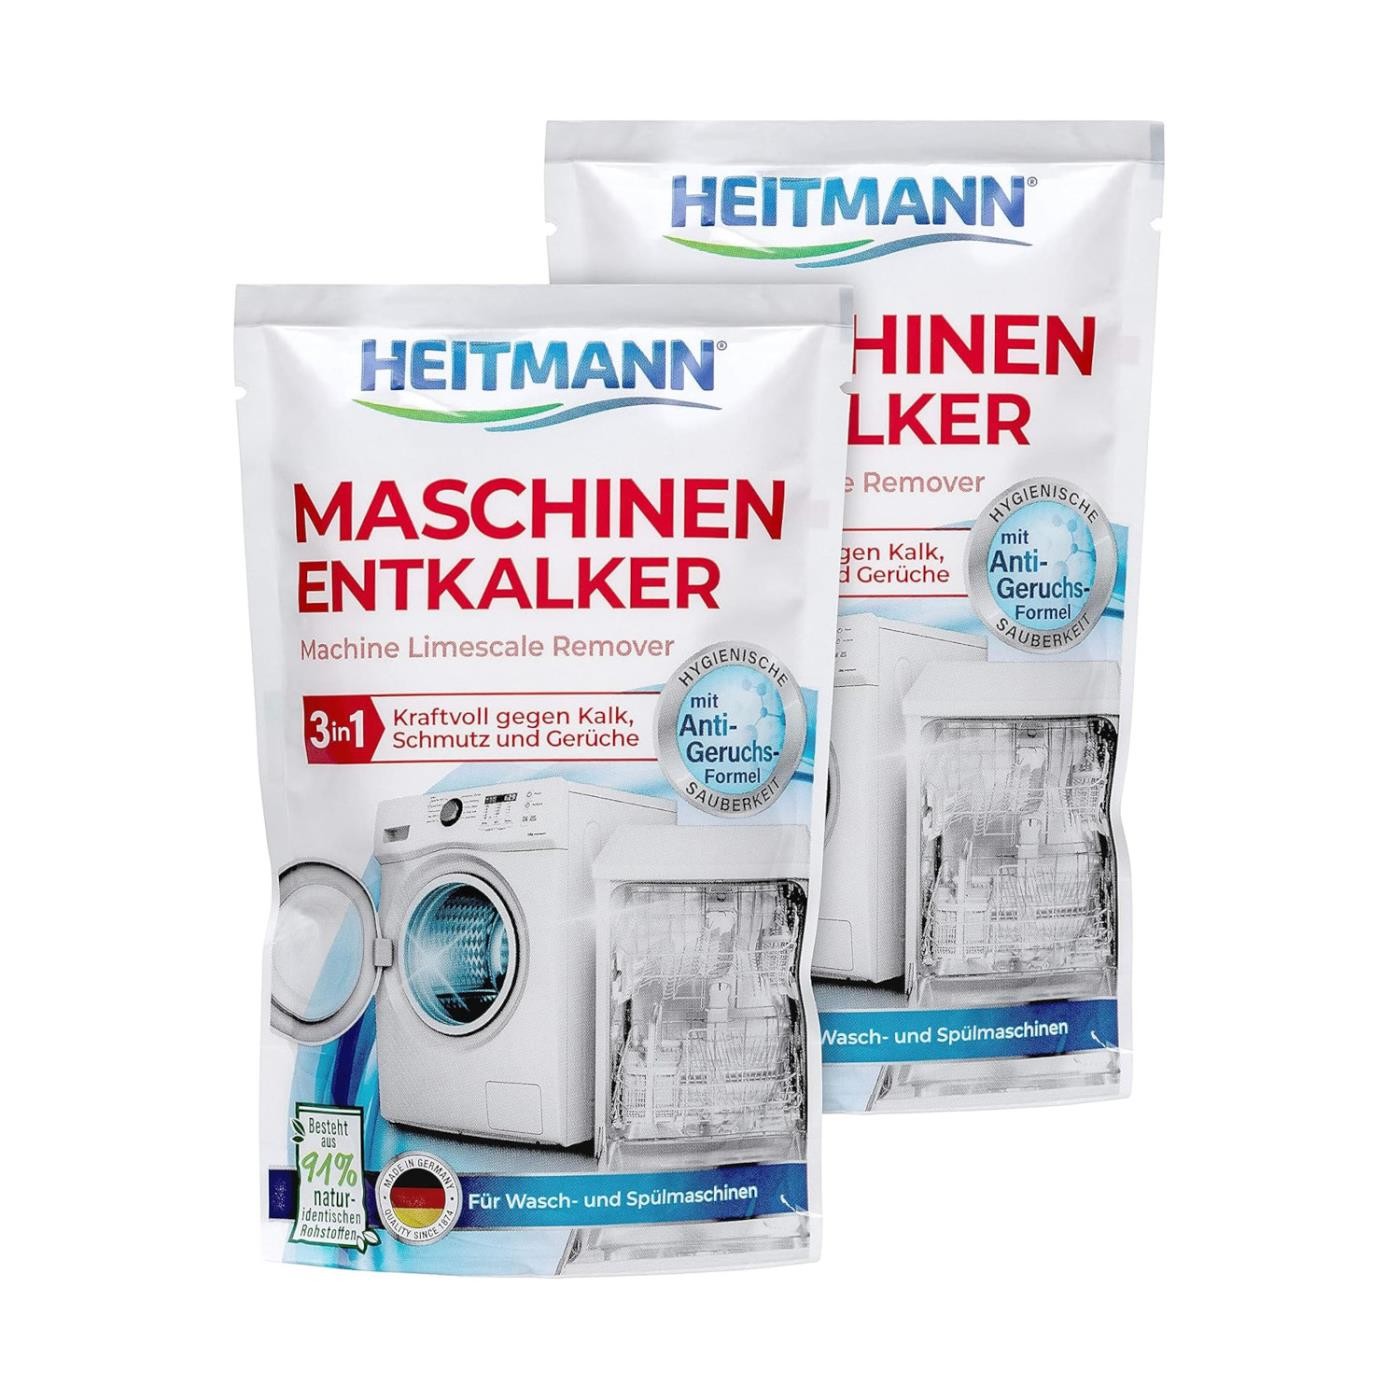 Heitmann Maschinen Entkalker 175g 3in1 2er Pack